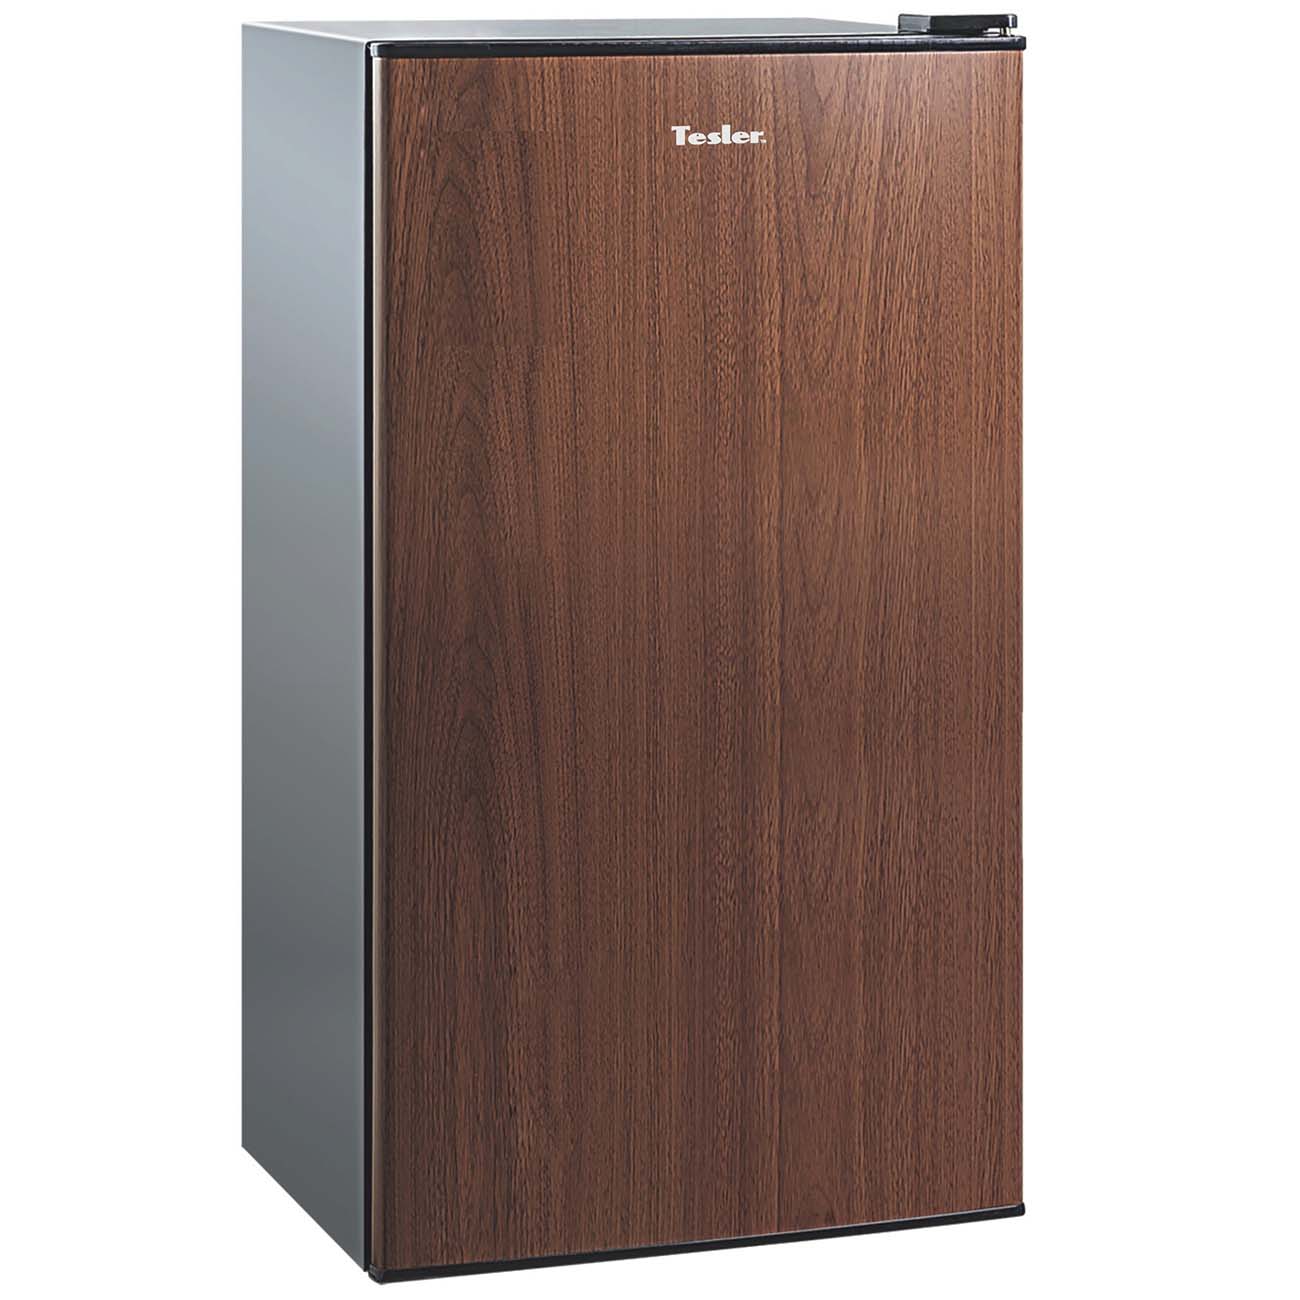 Мини холодильник Tesler RC-73 Wood